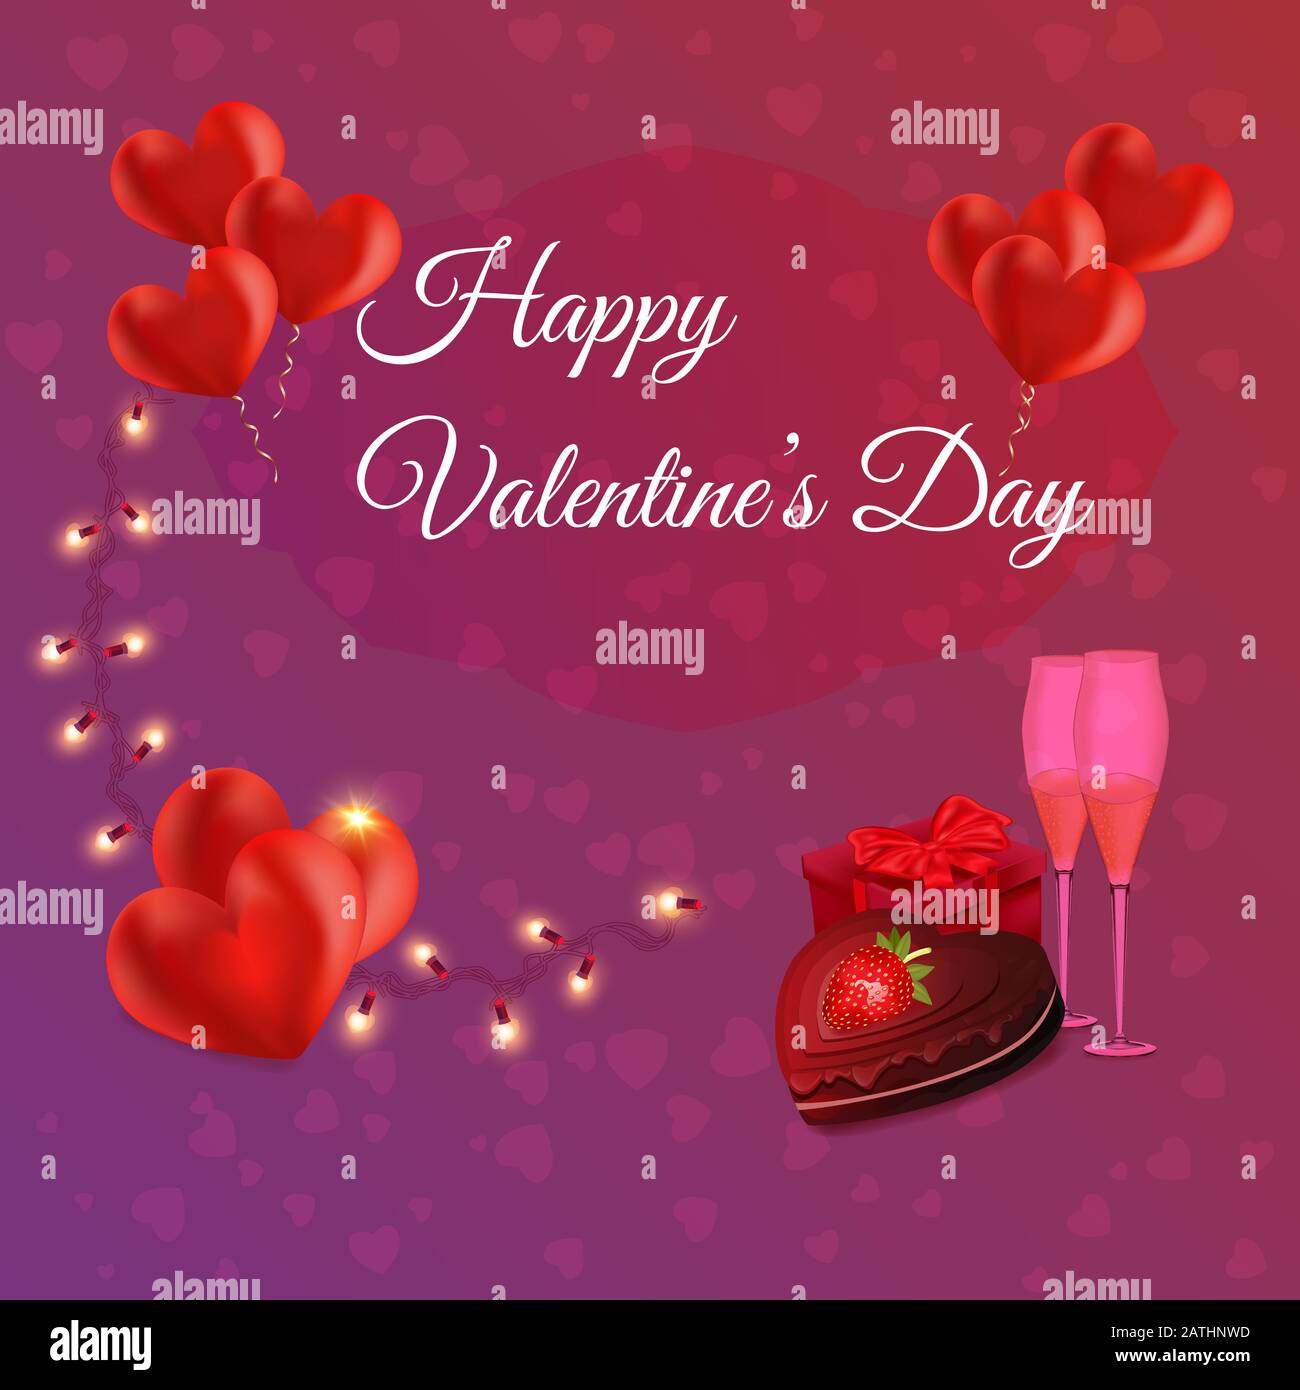 Bonne bannière de félicitations pour la Saint-Valentin avec des formes  rouges de coeur en relief - illustration vectorielle de carte de vœux  romantique. Belle affiche de fête d'amour pour Image Vectorielle Stock -